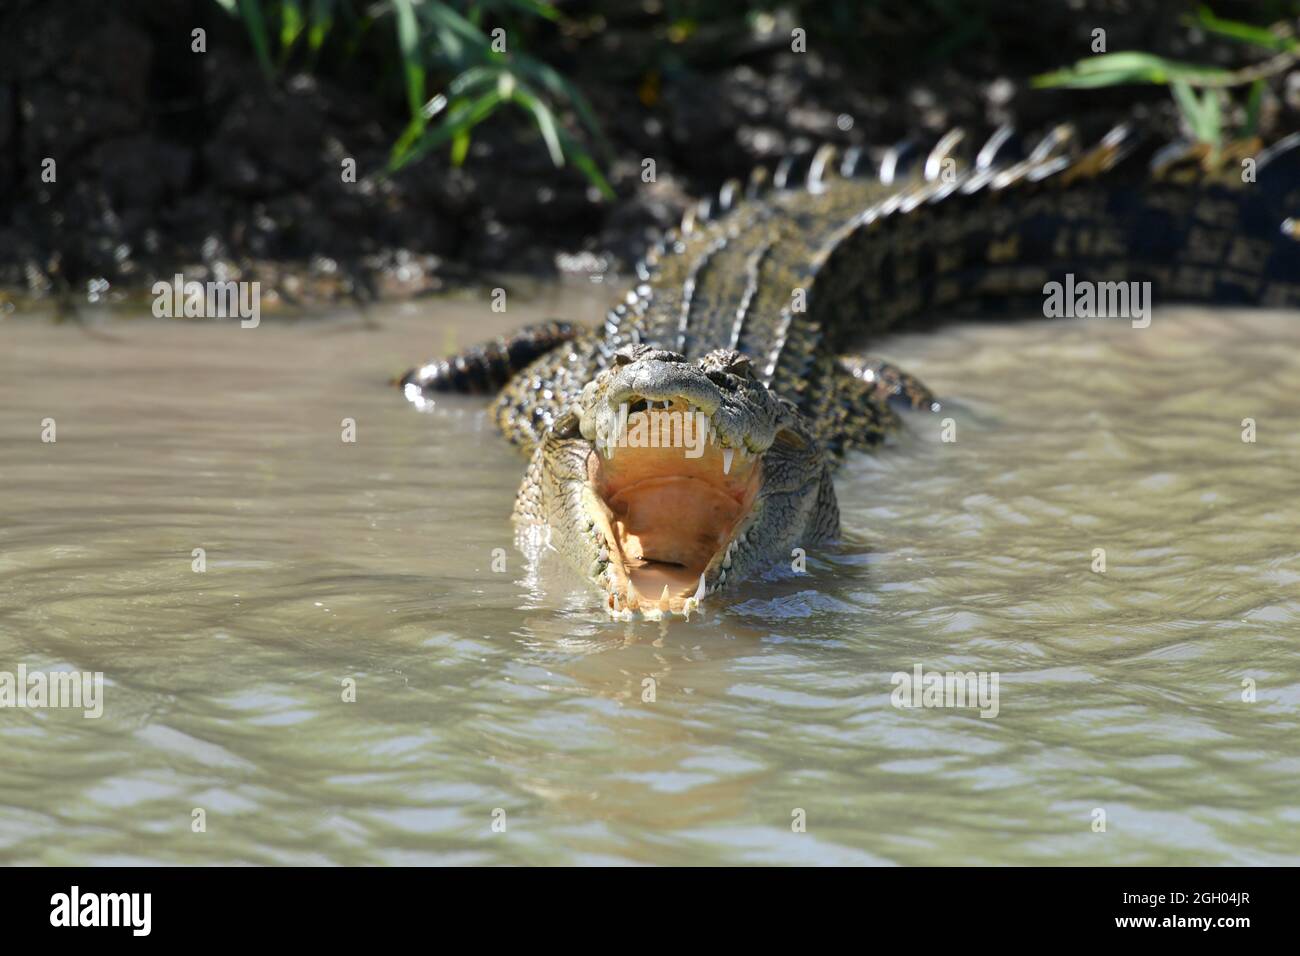 Crocodile d'eau de mer (Crocodylus porosus) en train de pêcher en bouche dans les terres humides de Mary River, Corroboree Billabong territoire du Nord Australie. Banque D'Images